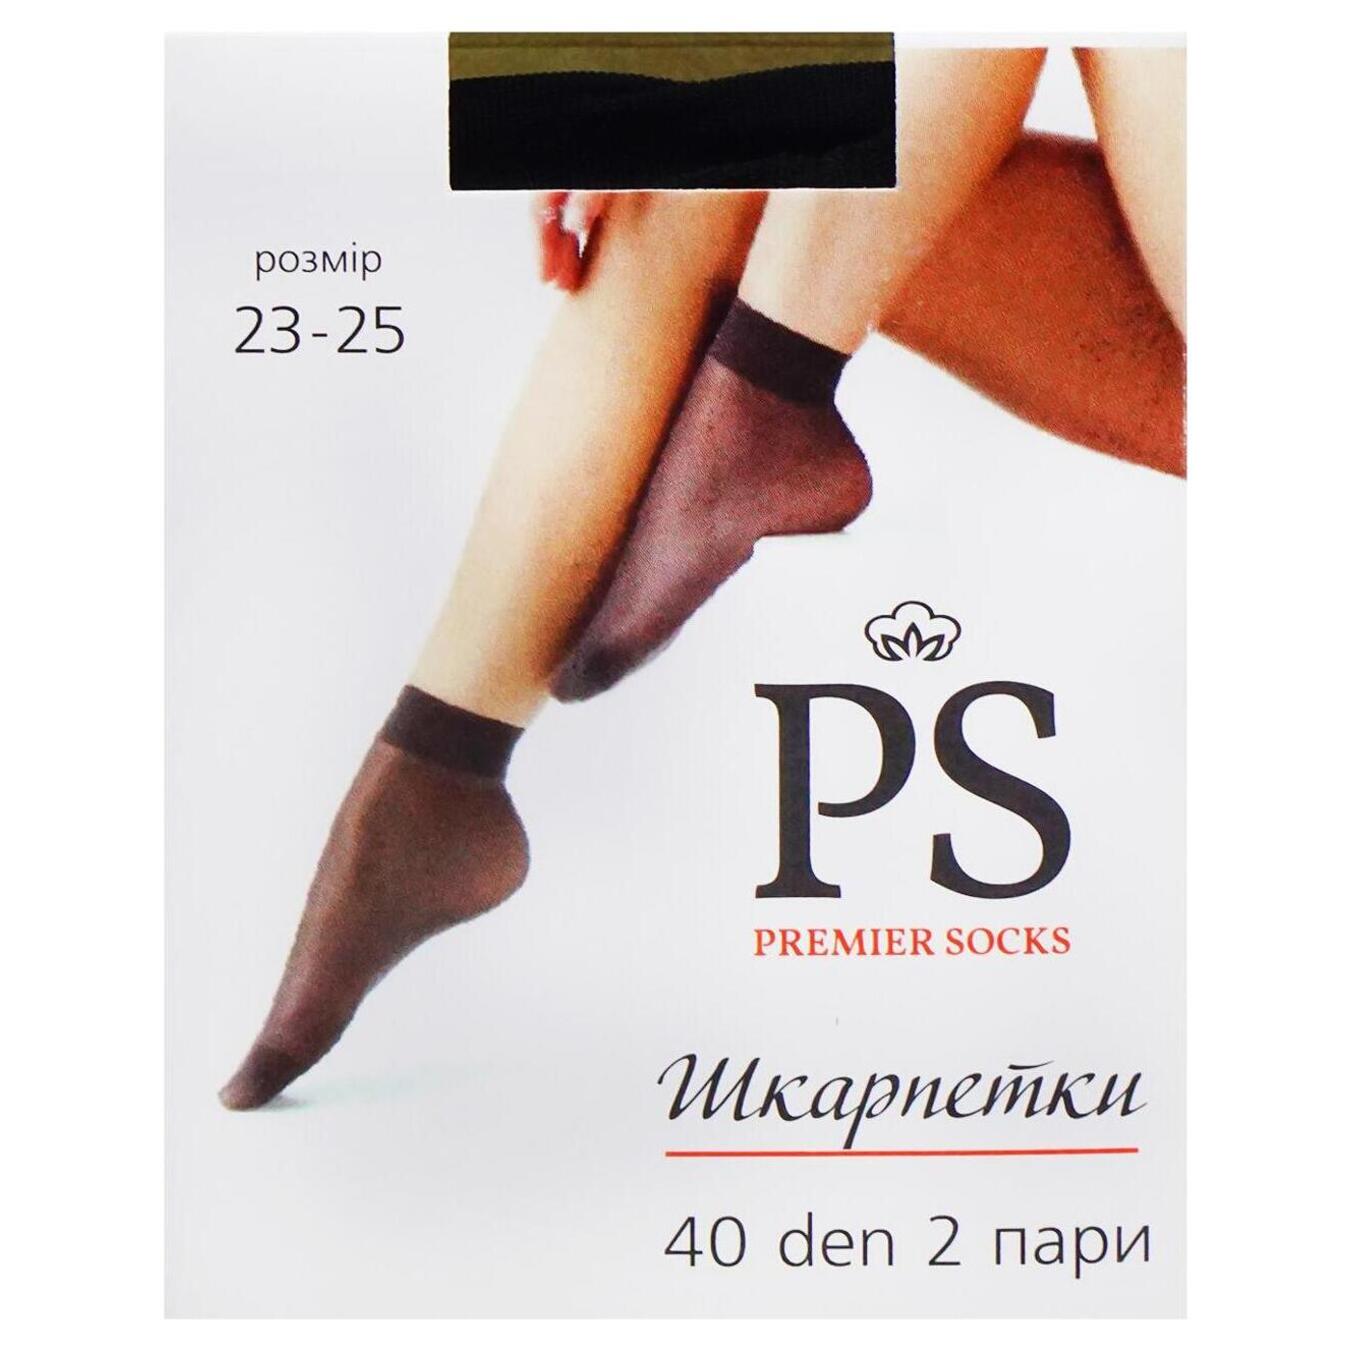 Women's socks Premier Socks 40d black 2 pairs 23-25 years.